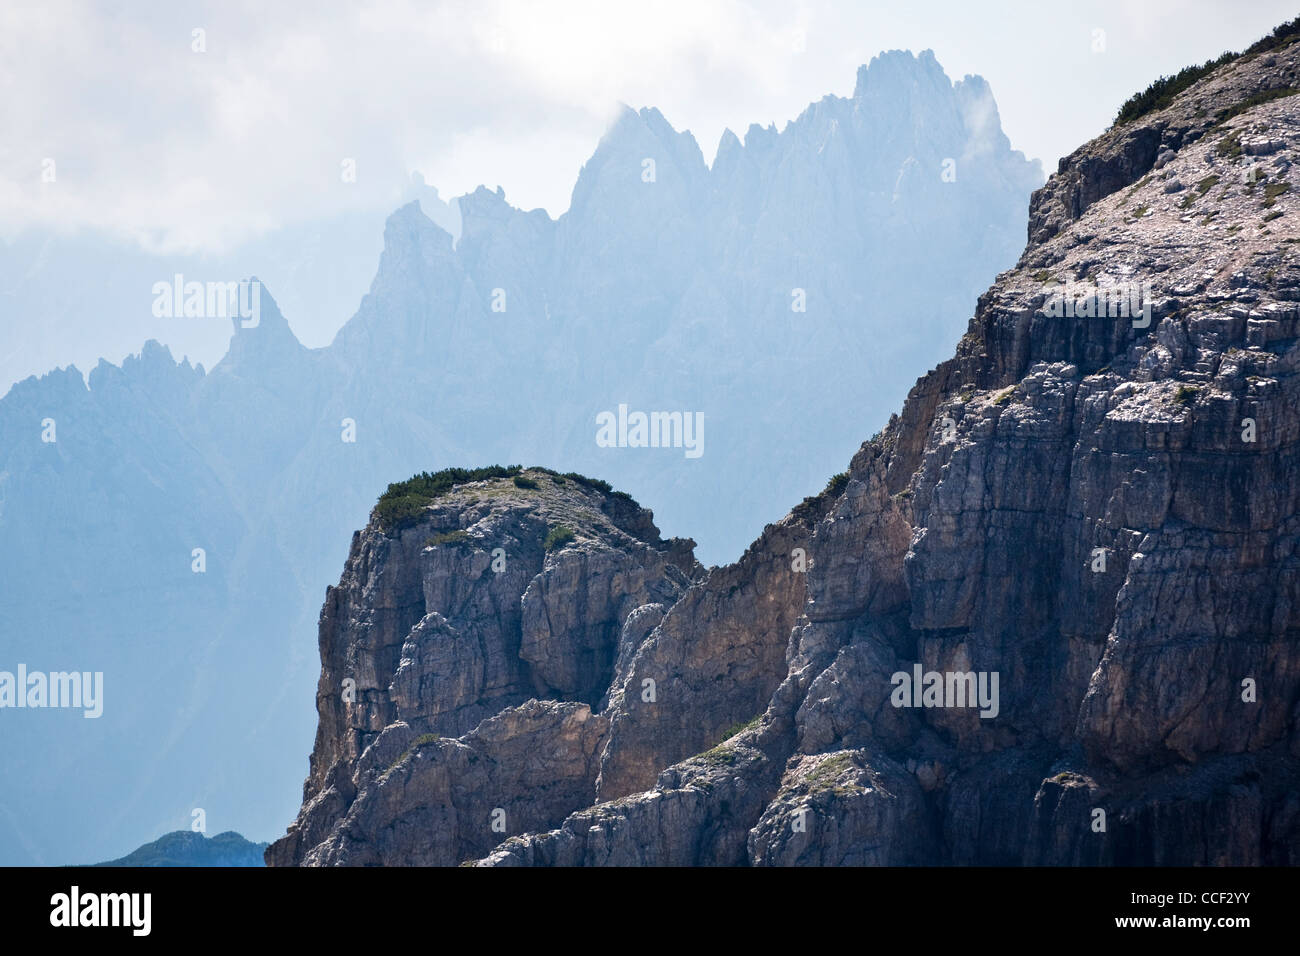 Views of Cadini di Misurina seen from Tre Cime di Lavaredo, in the Italian Dolomite Alps Stock Photo